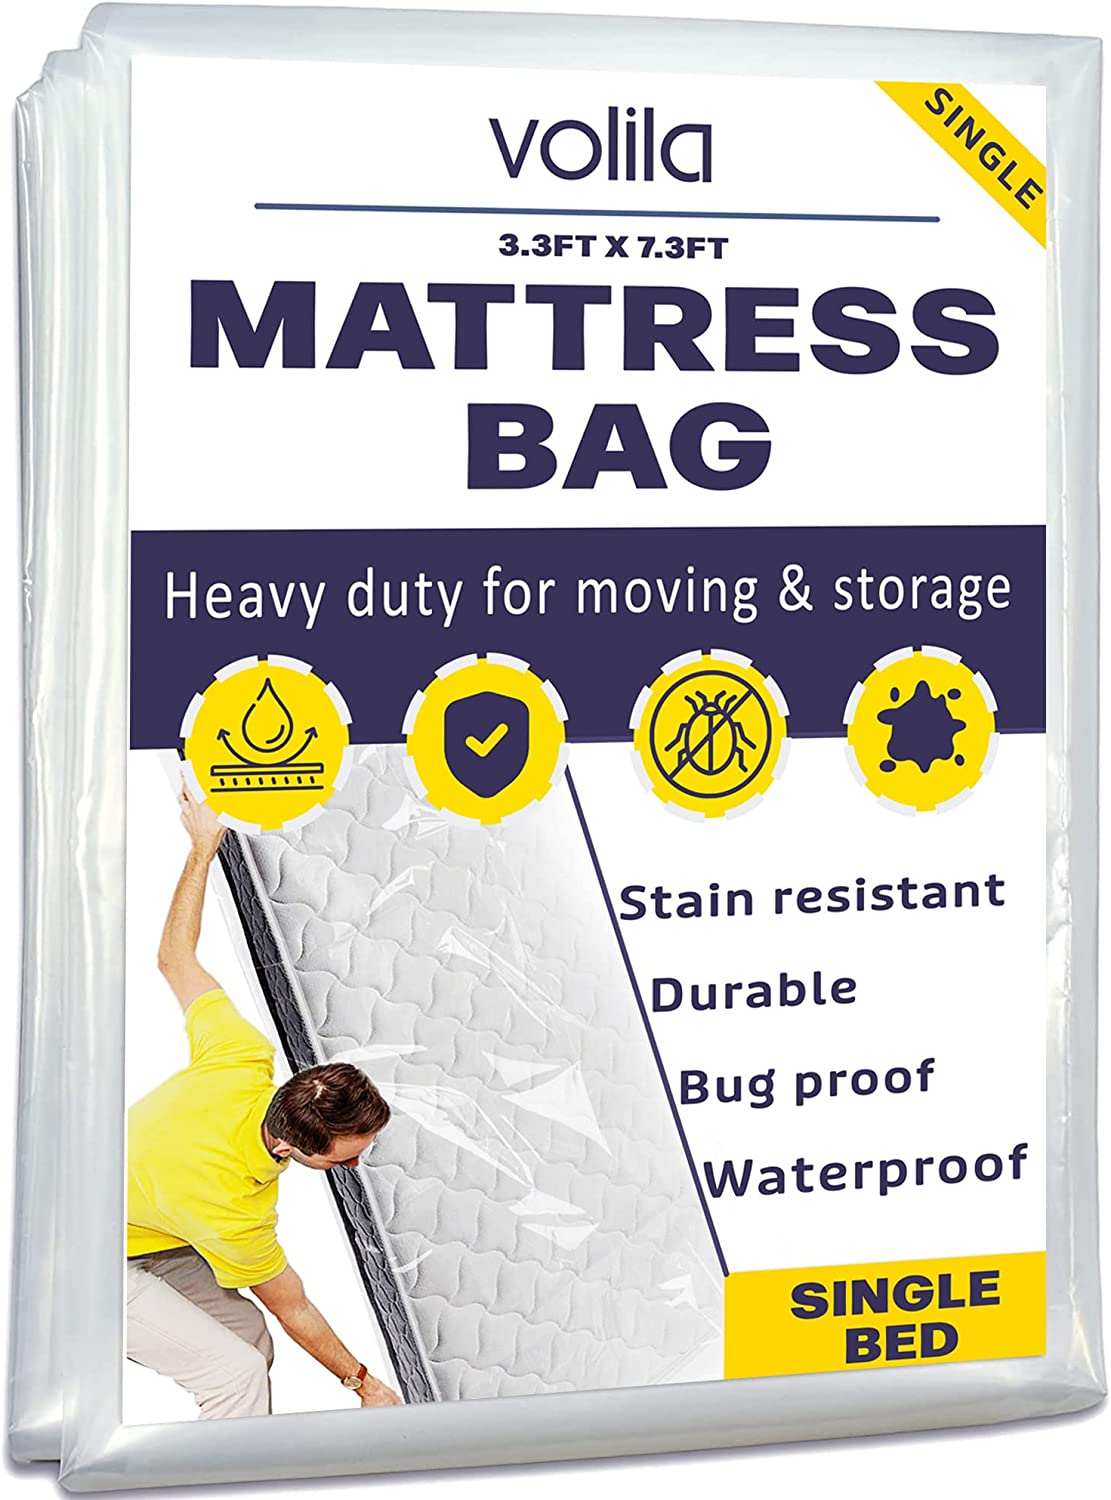 Mattress Storage Single Main IMage